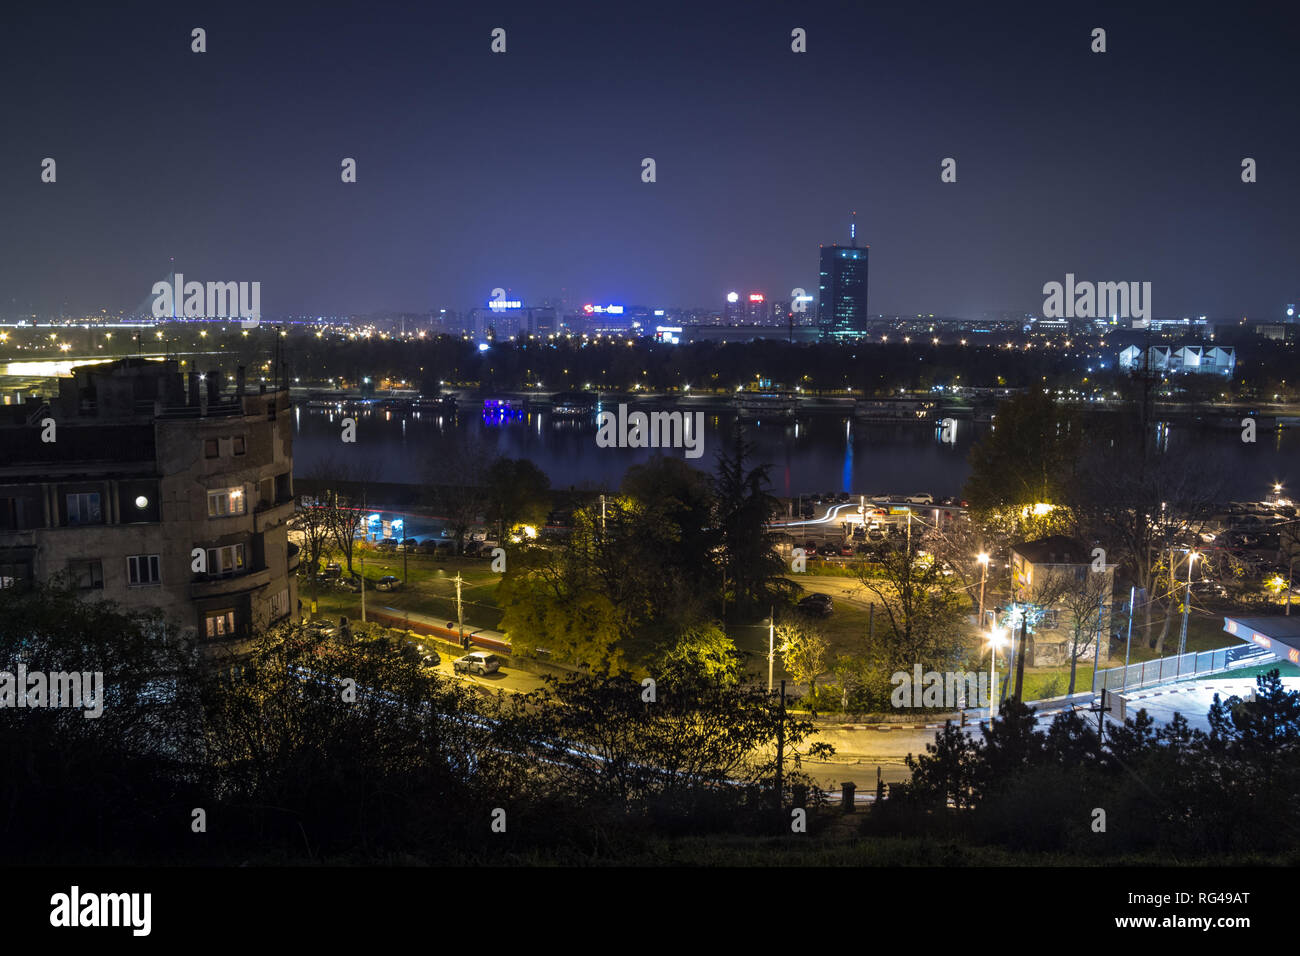 Belgrad, Serbien - 8. NOVEMBER 2014: Skyline von Neu Belgrad (Novi Beograd) bei Nacht von der Festung Kalemegdan gesehen. Die wichtigsten Sehenswürdigkeiten der Dist Stockfoto